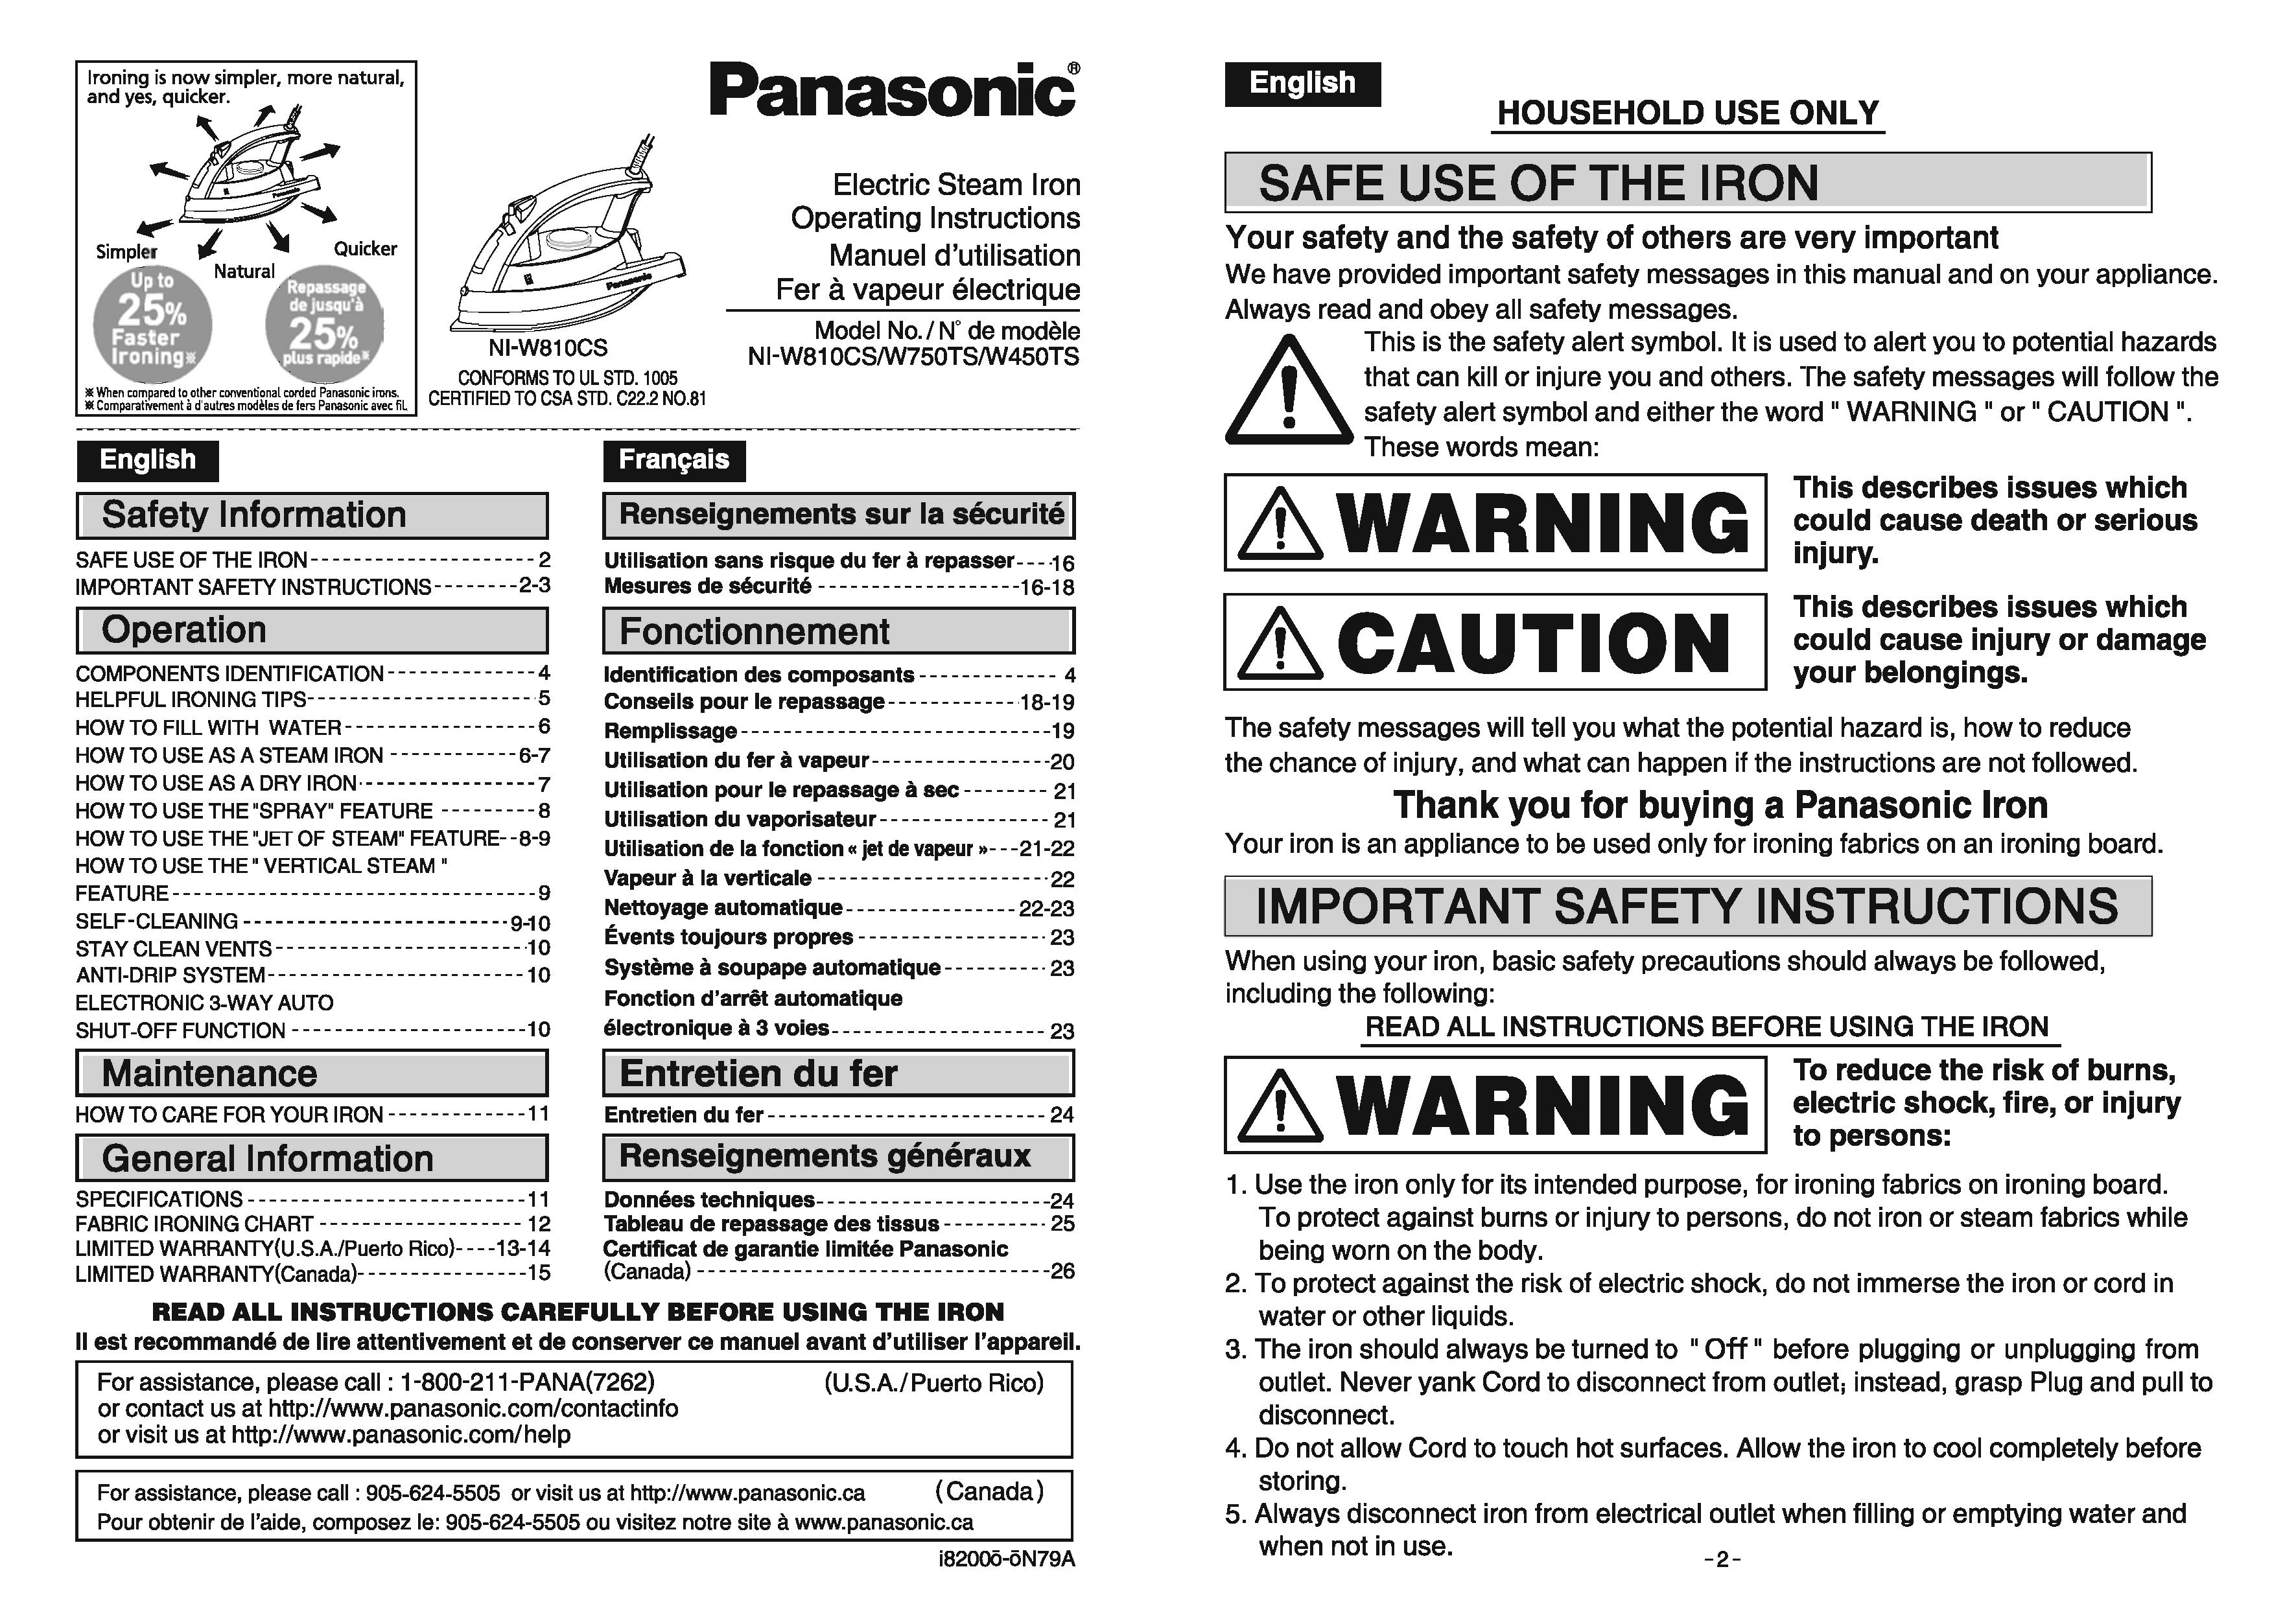 Panasonic NIW810CS Iron User Manual